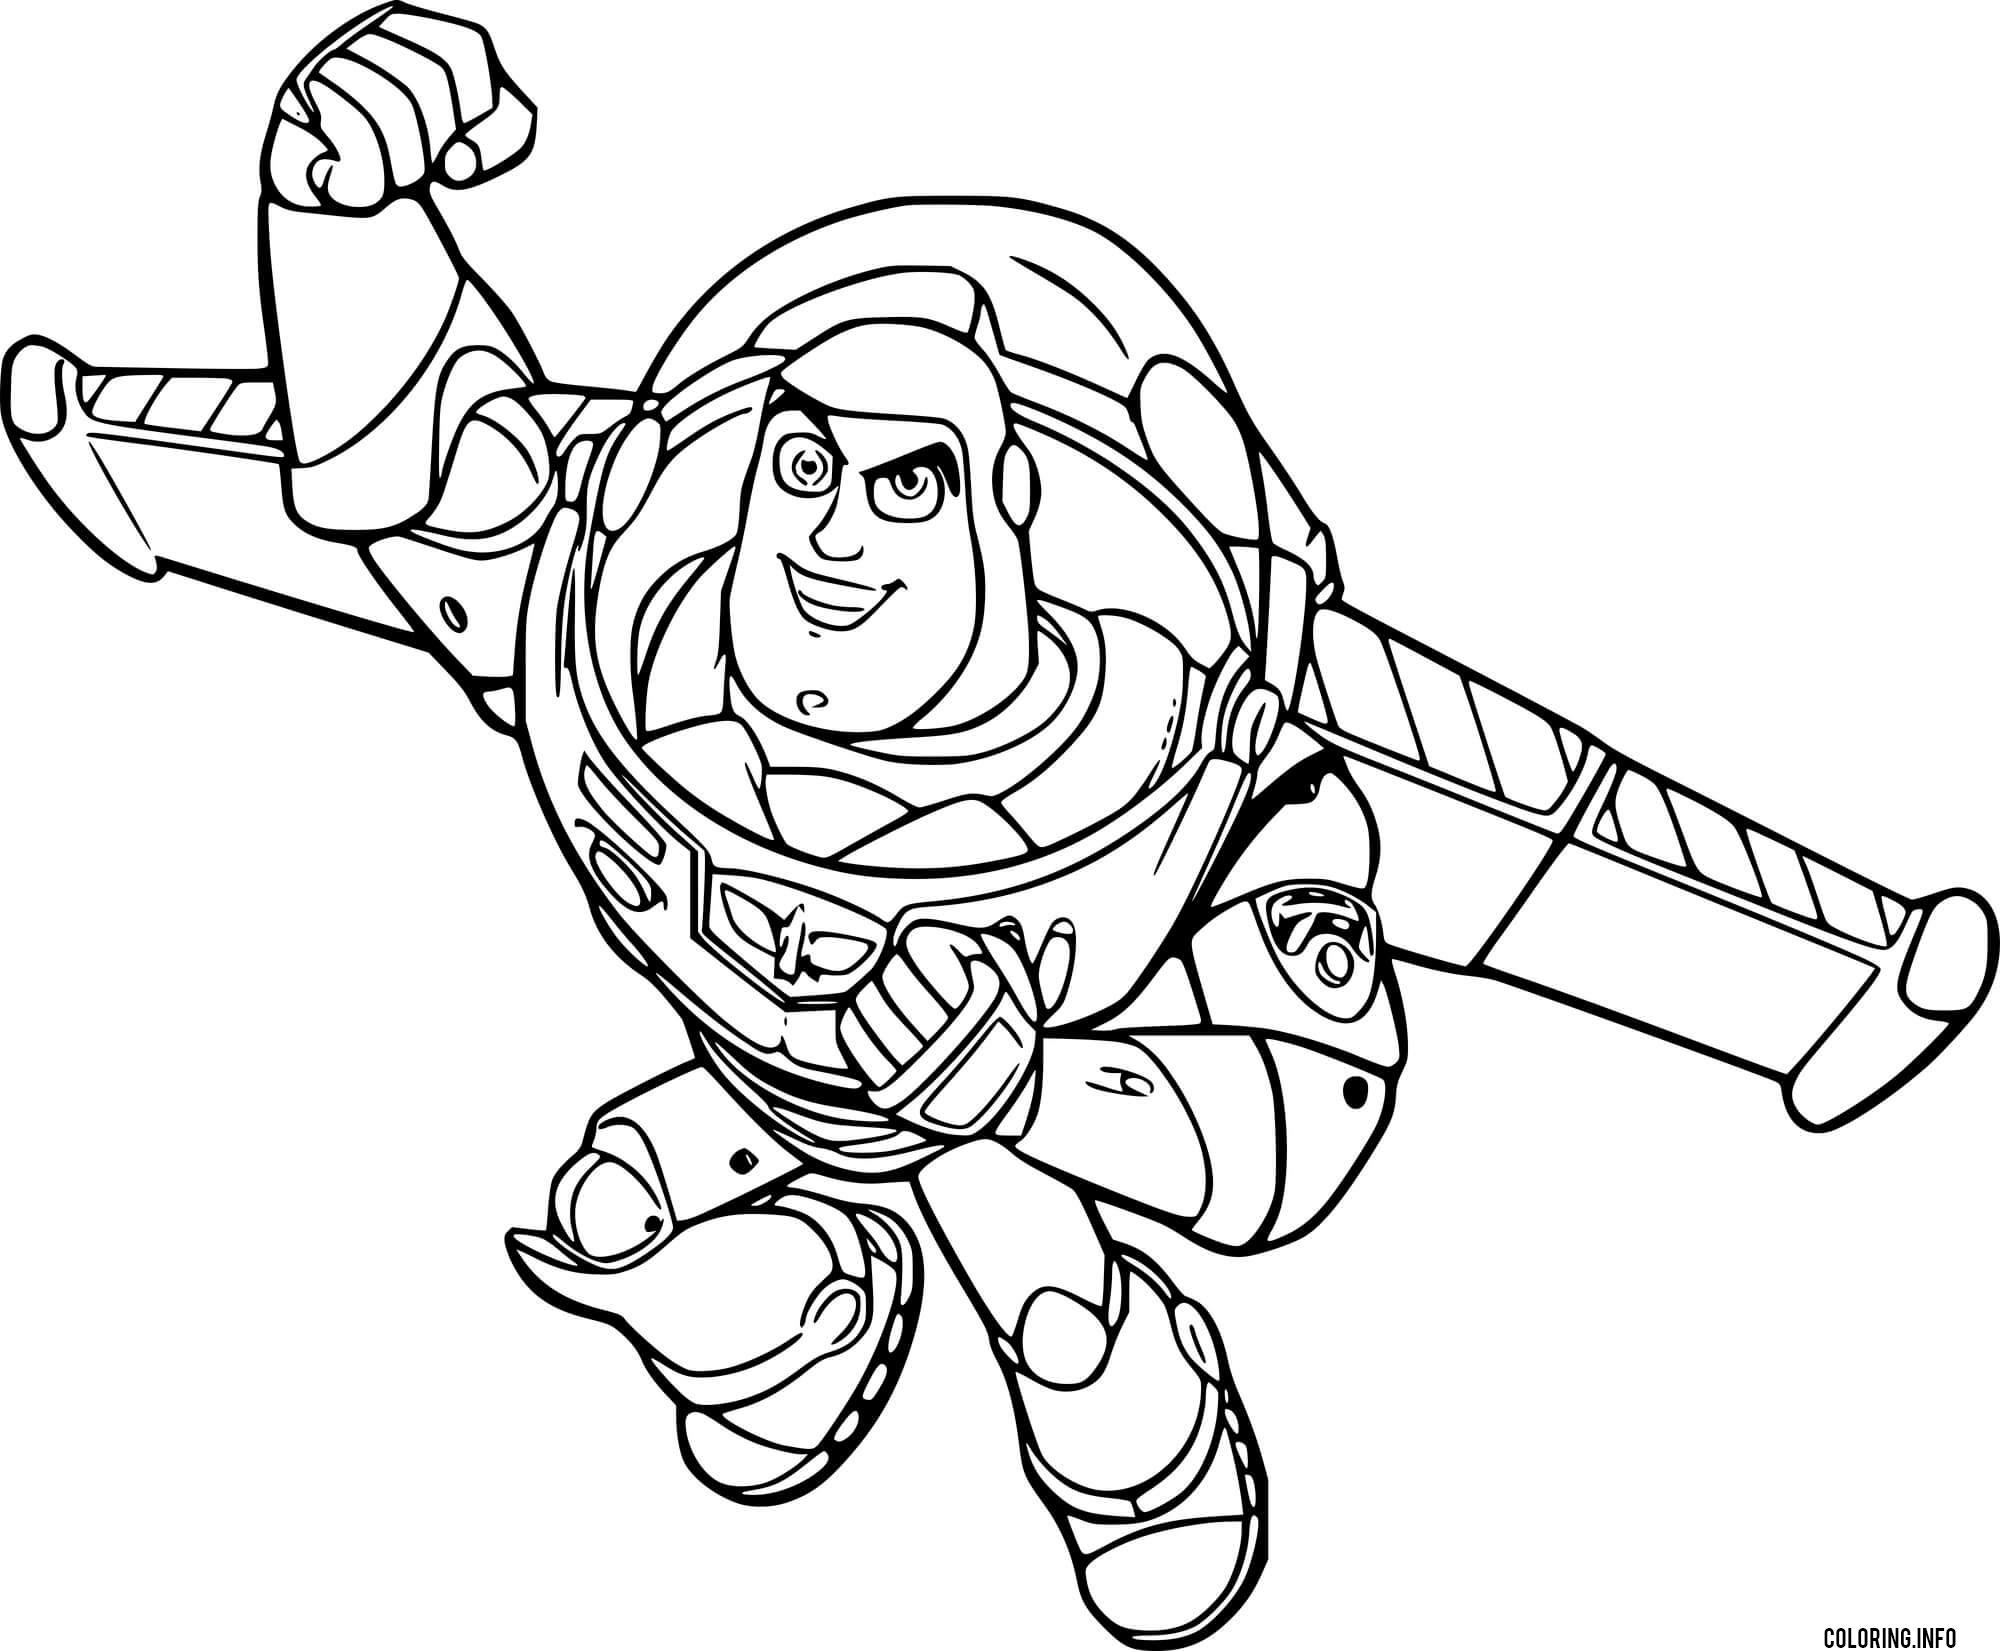 Happy Buzz Lightyear coloring